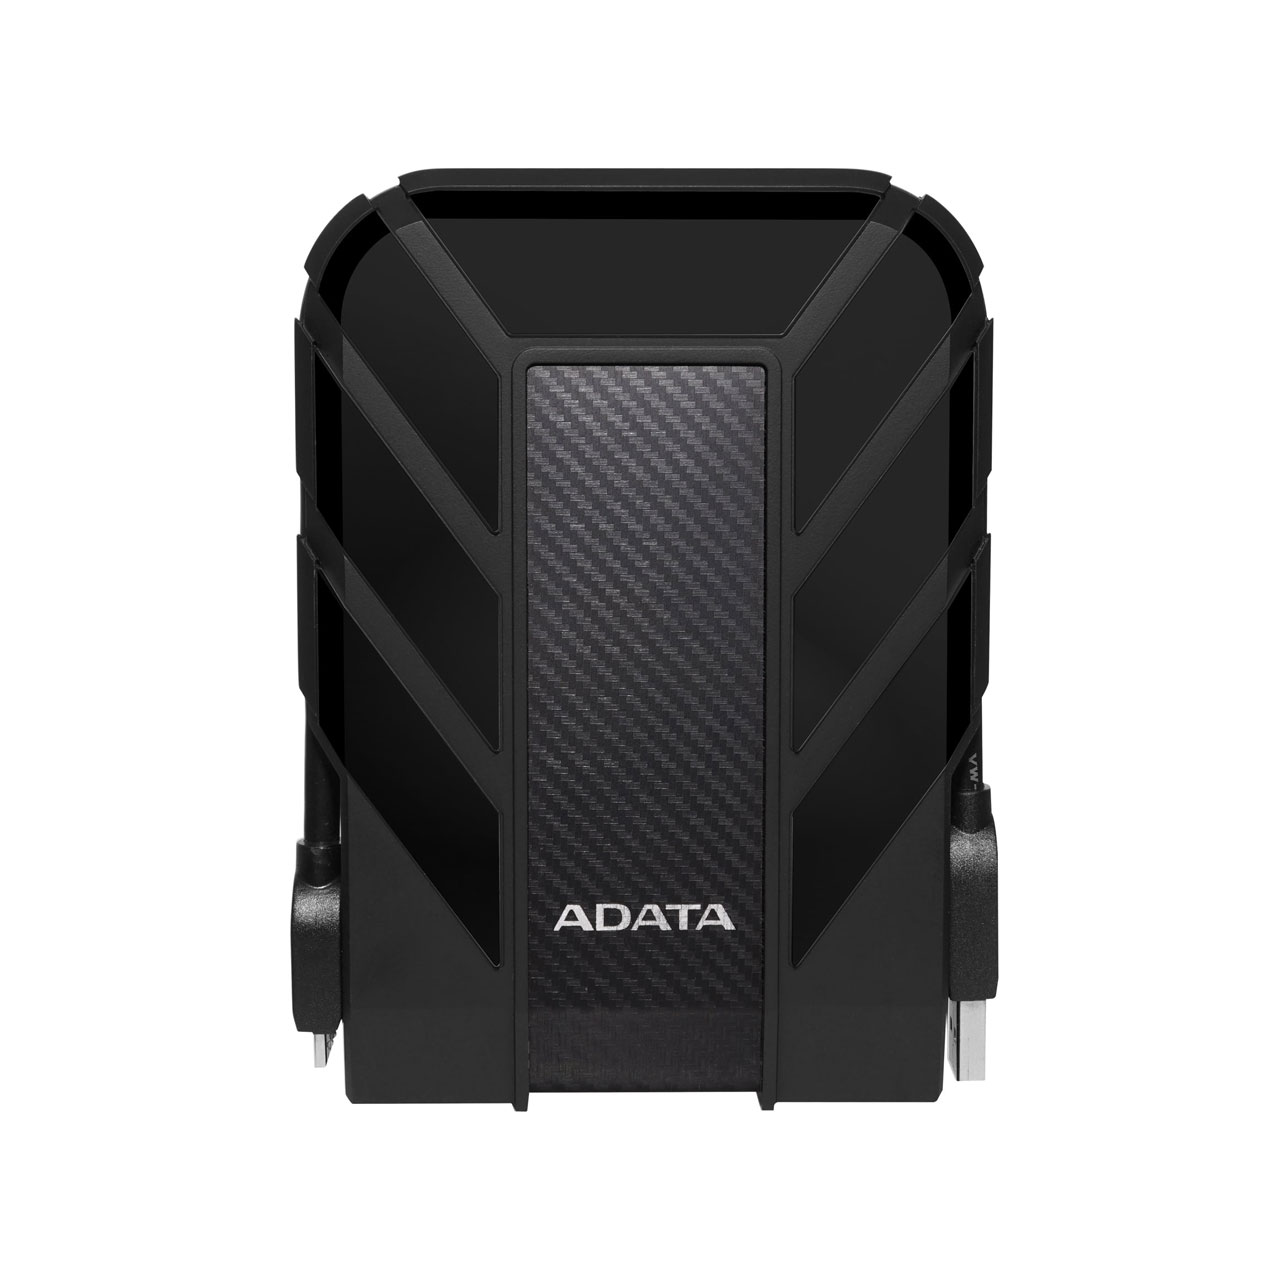 هارد اکسترنال ADATA مدل HD710 Pro ظرفیت 1TB - مشکی (گارانتی شرکت آونگ